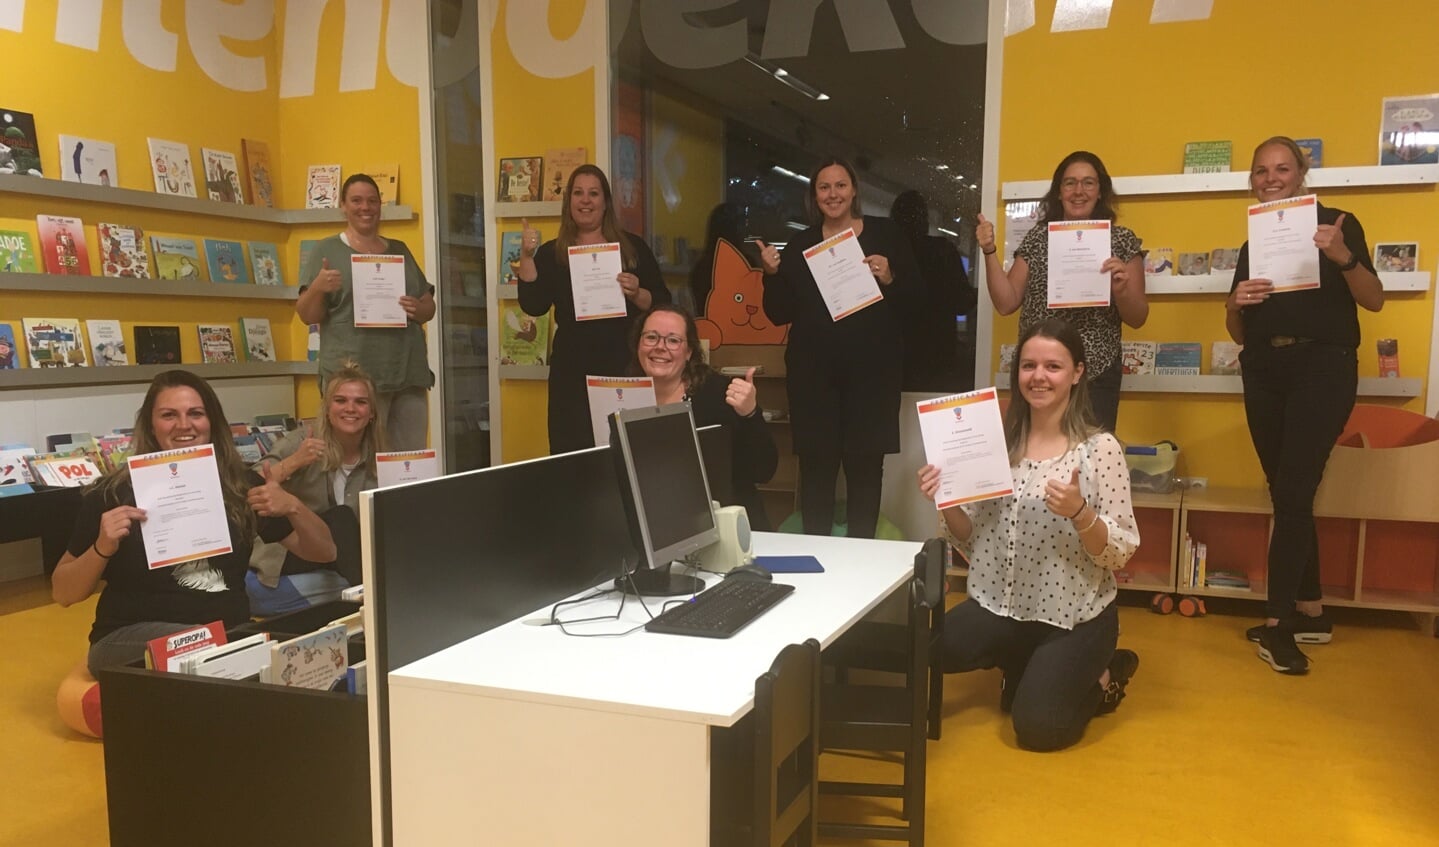 De medewerkers Happy Kids met hun behaalde certificaat ‘Interactief voorlezen’. 